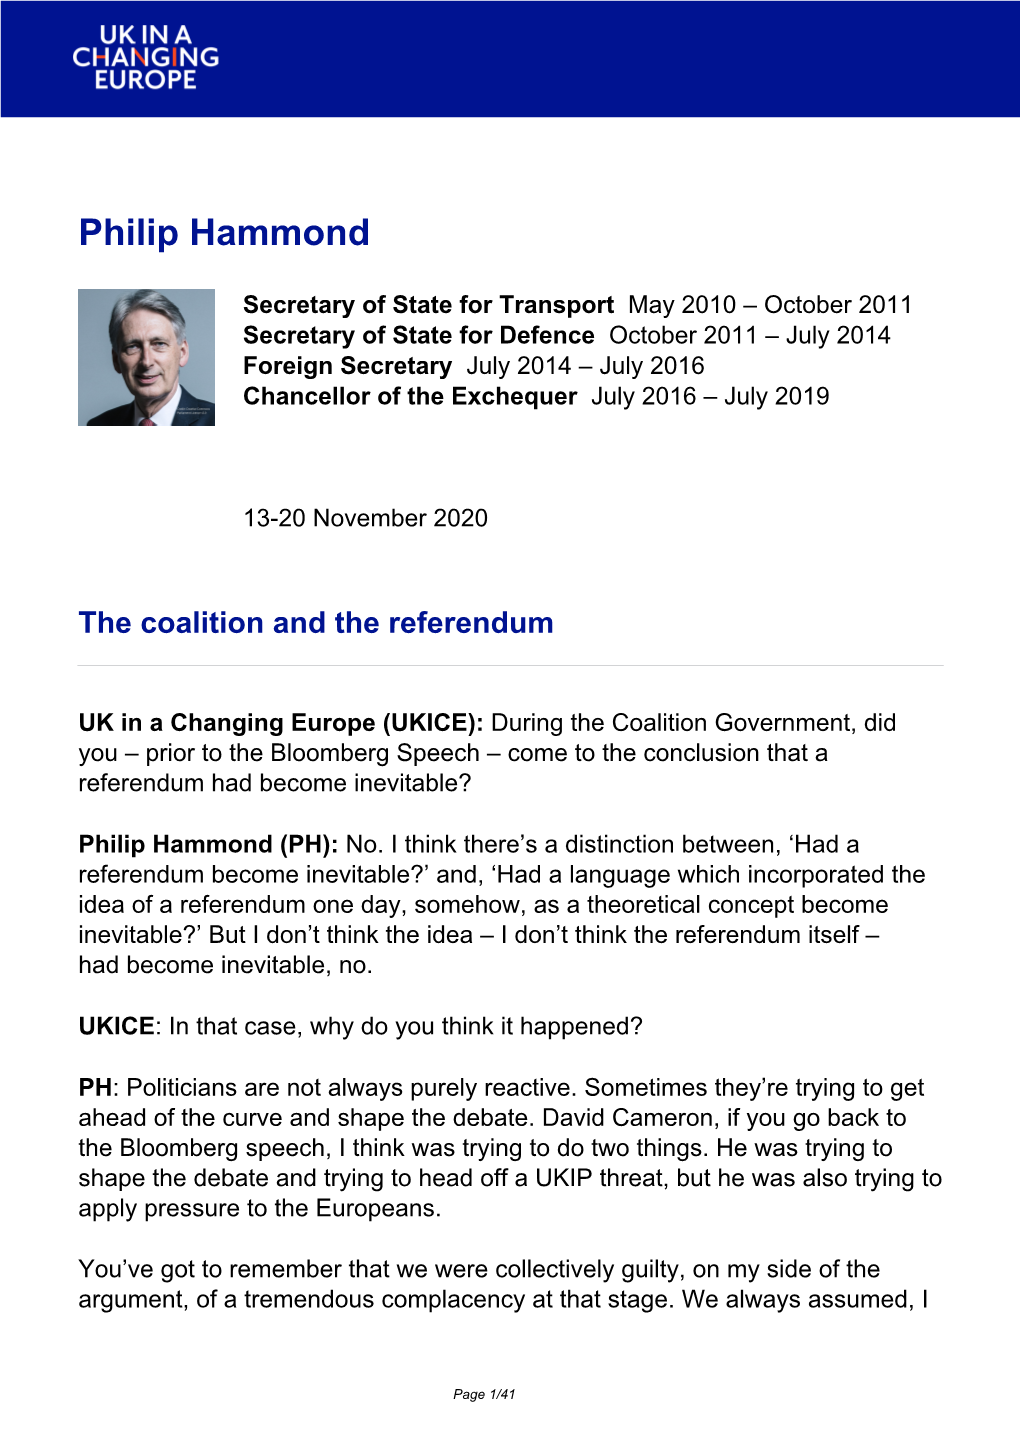 Brexit Interview: Philip Hammond